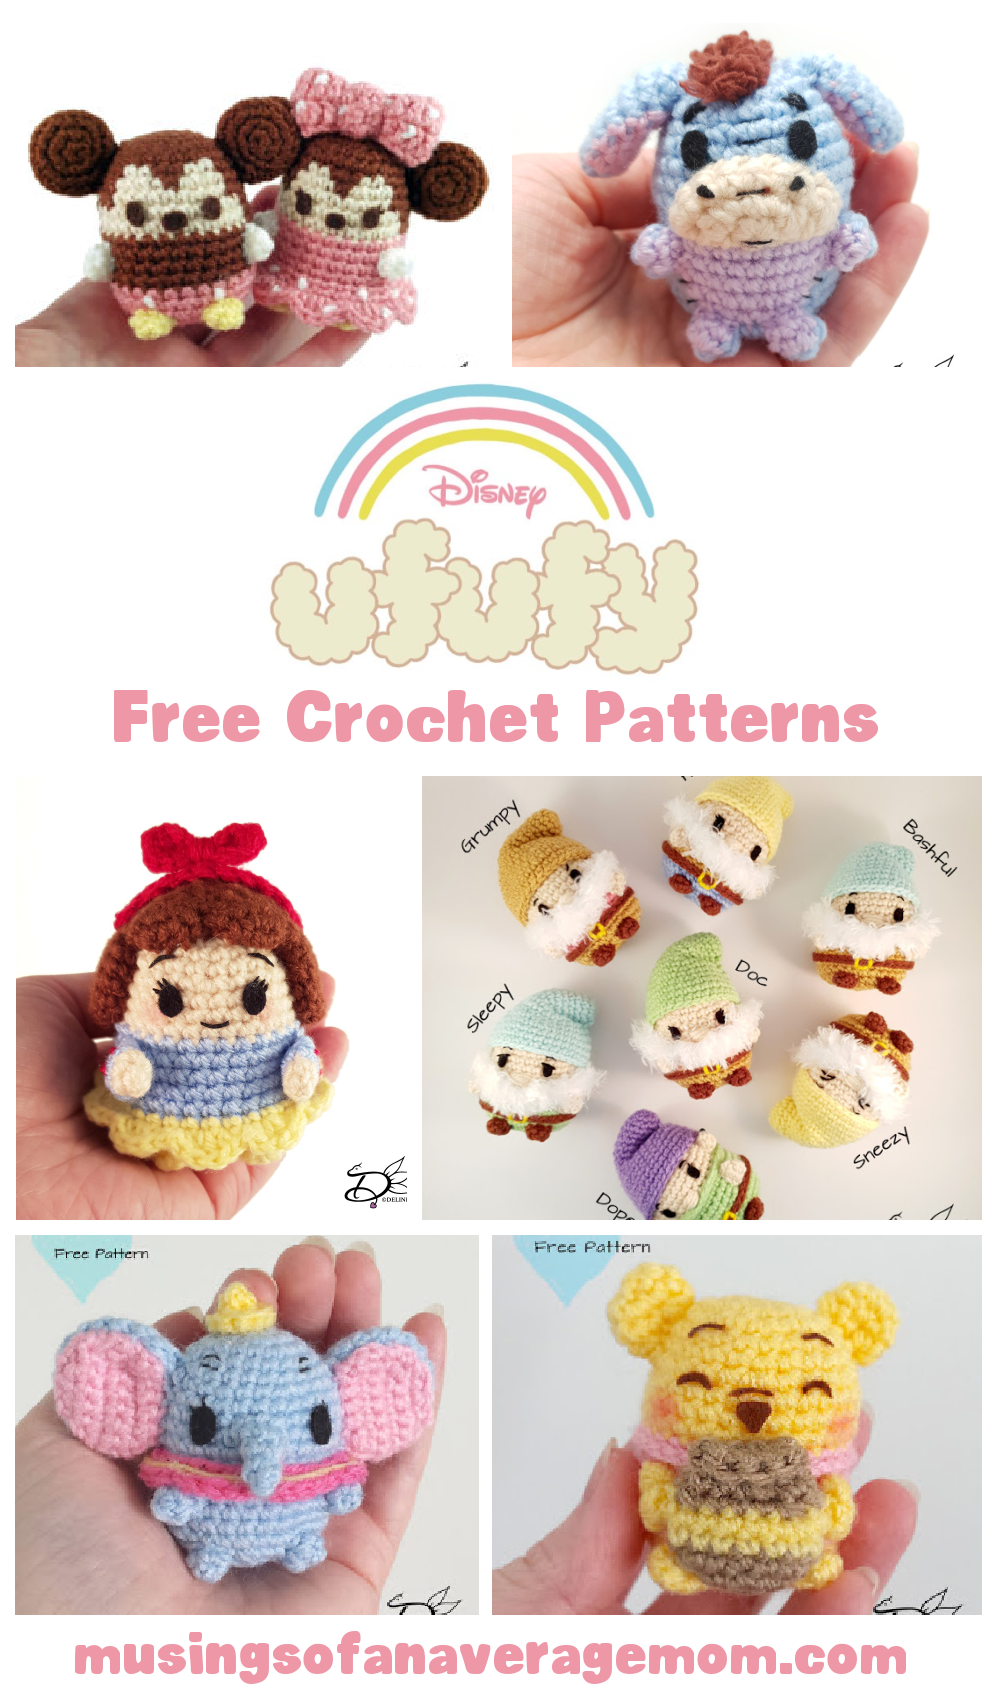 Disney Crochet: Amigurumi Disney Characters - Cute Pattern For